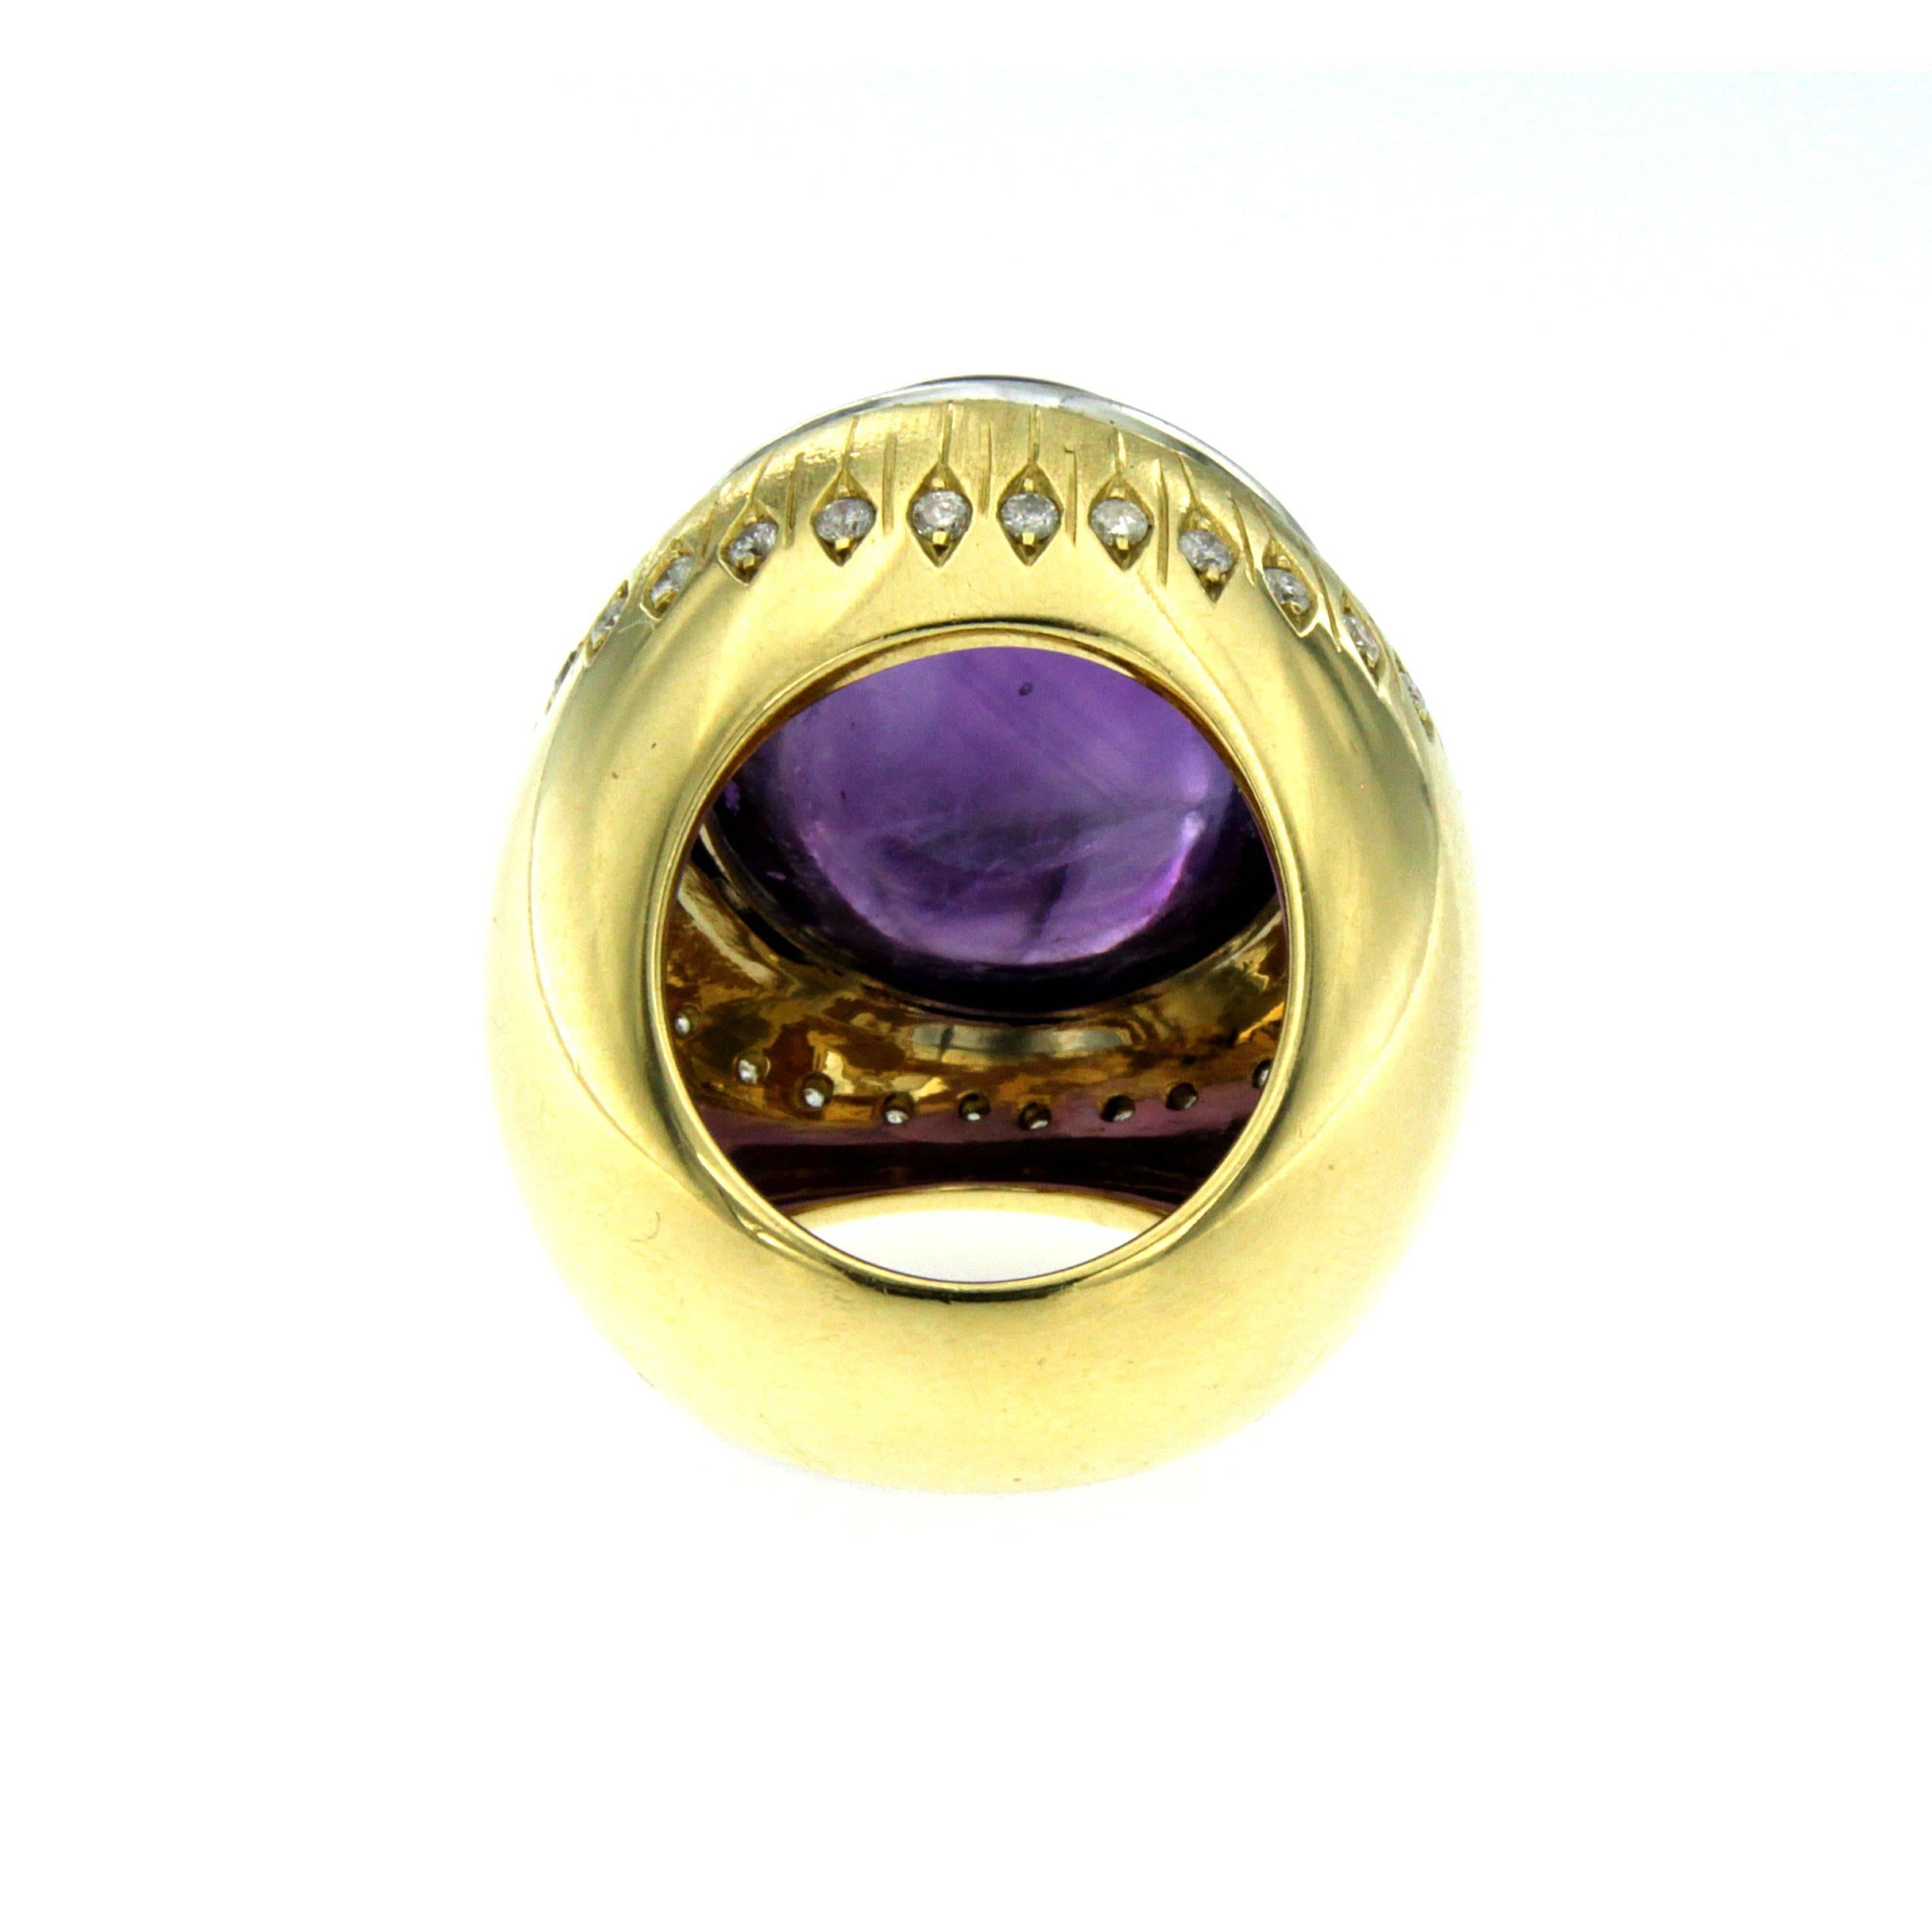 40 carat amethyst ring